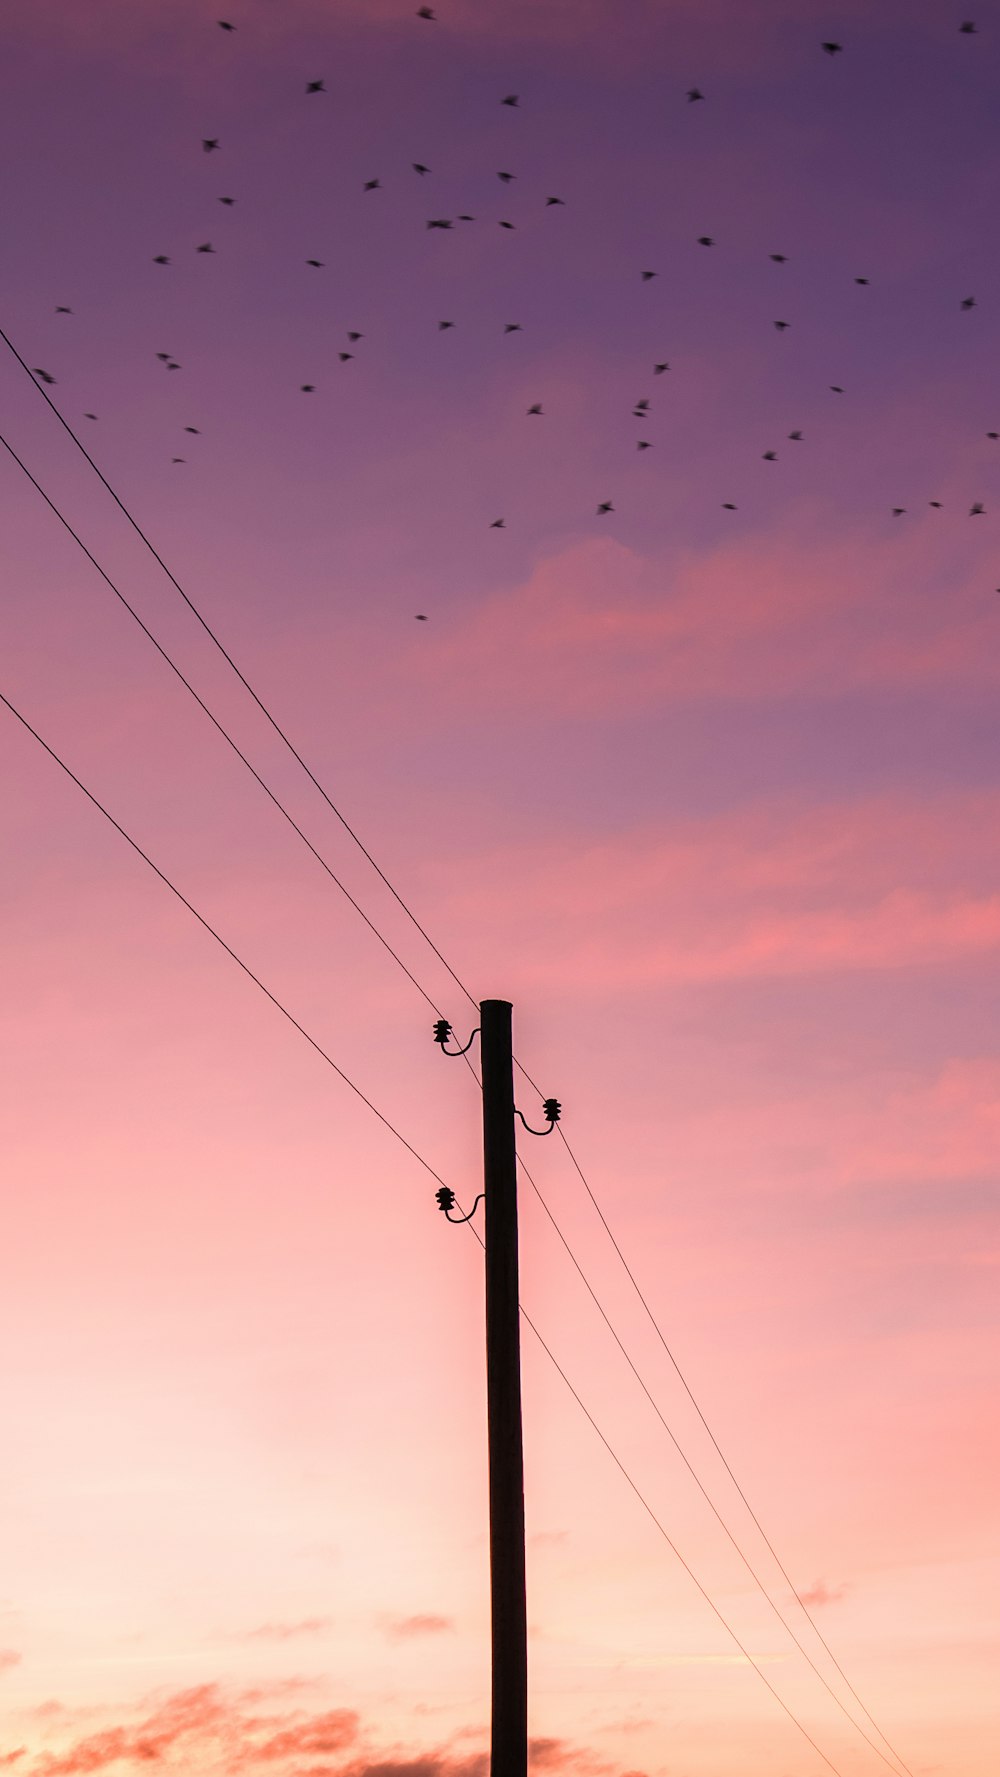 volée d’oiseaux volant au-dessus du poteau électrique